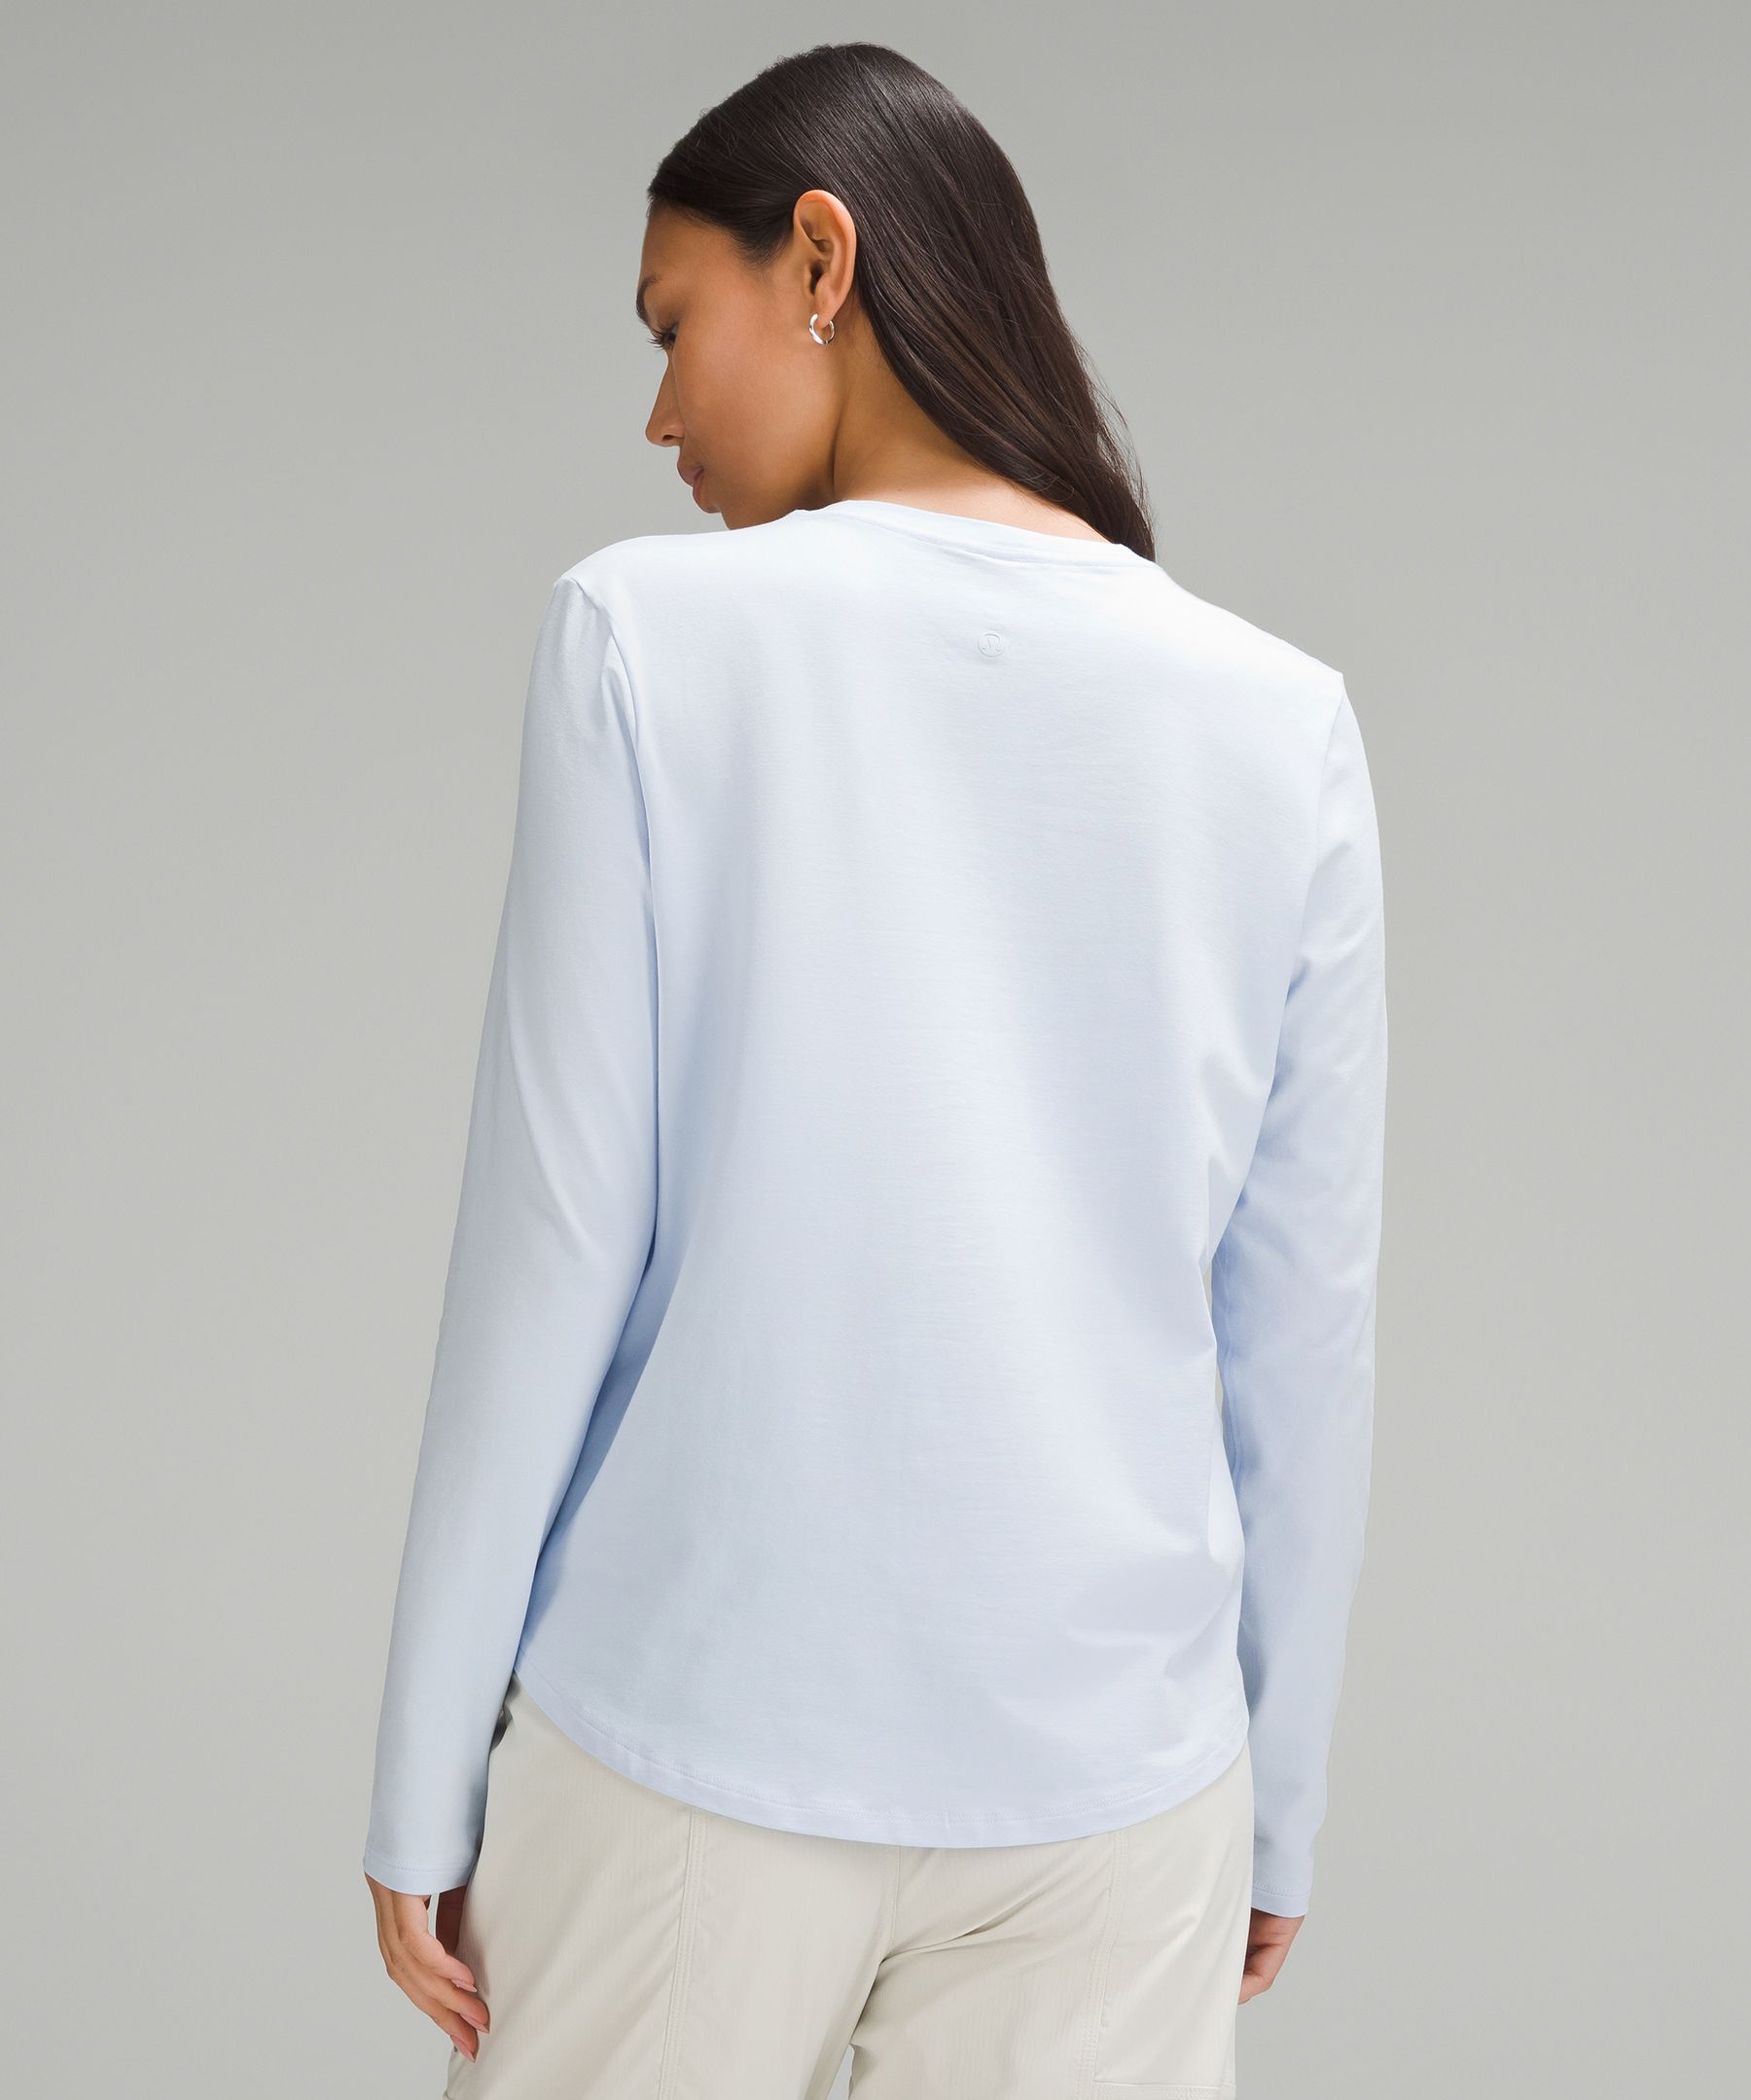 Lululemon Athletica Grey Long Sleeve Shirt Women's Size Medium